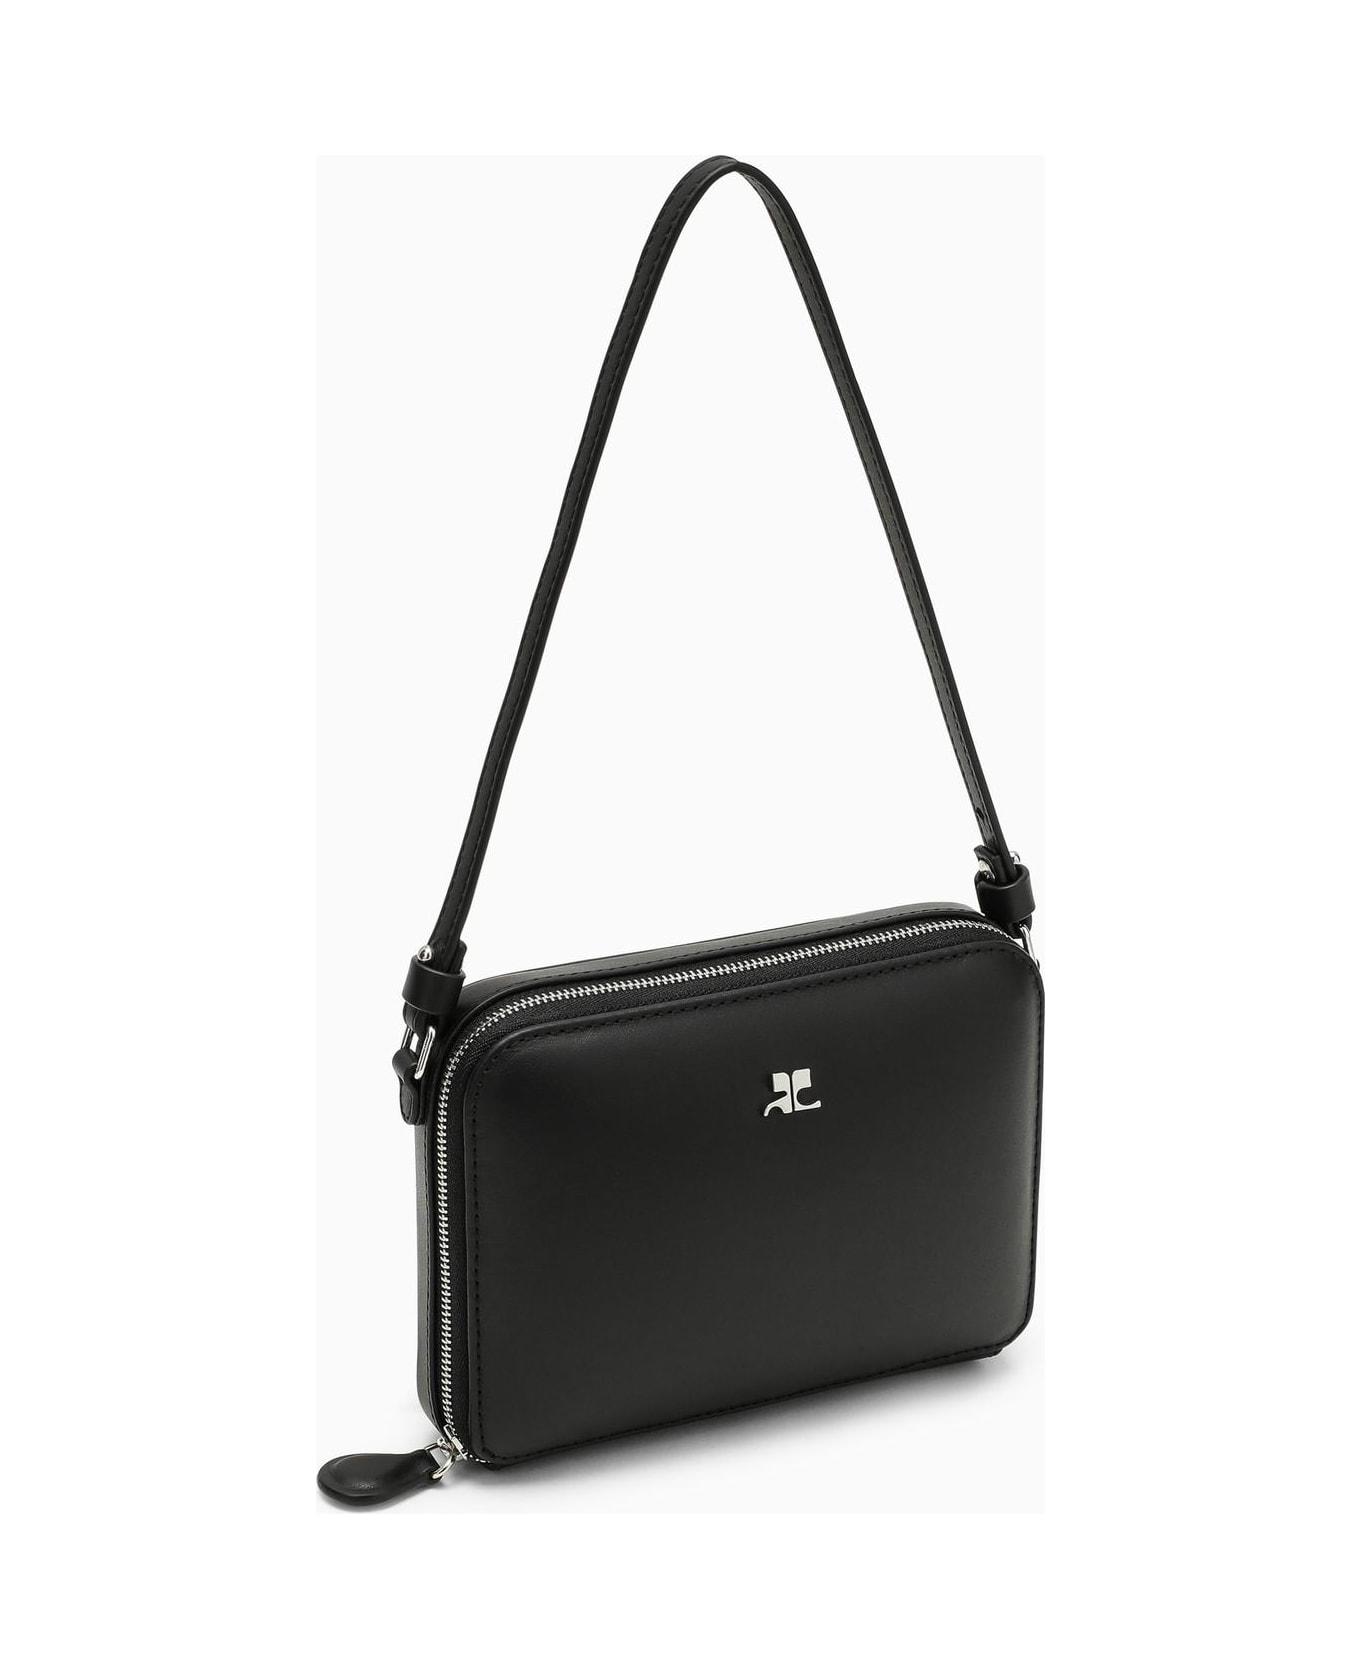 Courrèges Black Leather Shoulder Bag - 9999 BLACK